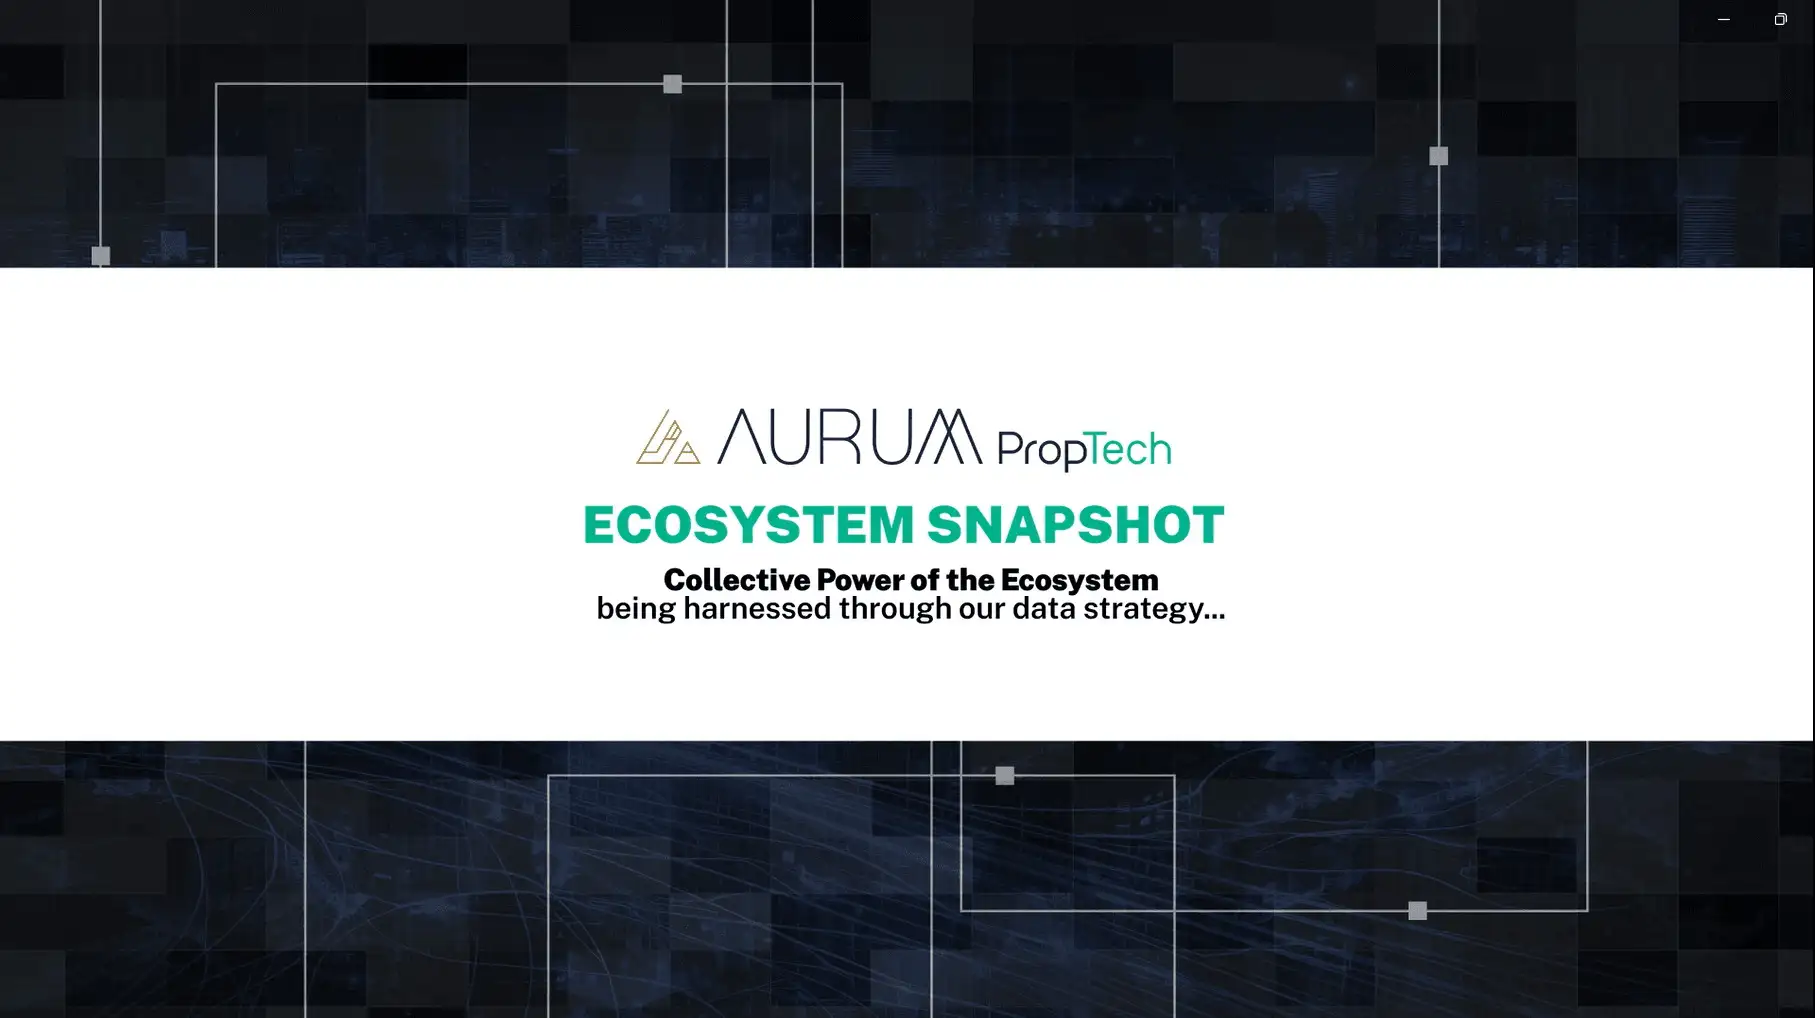 Aurum PropTech Ecosystem Snapshot